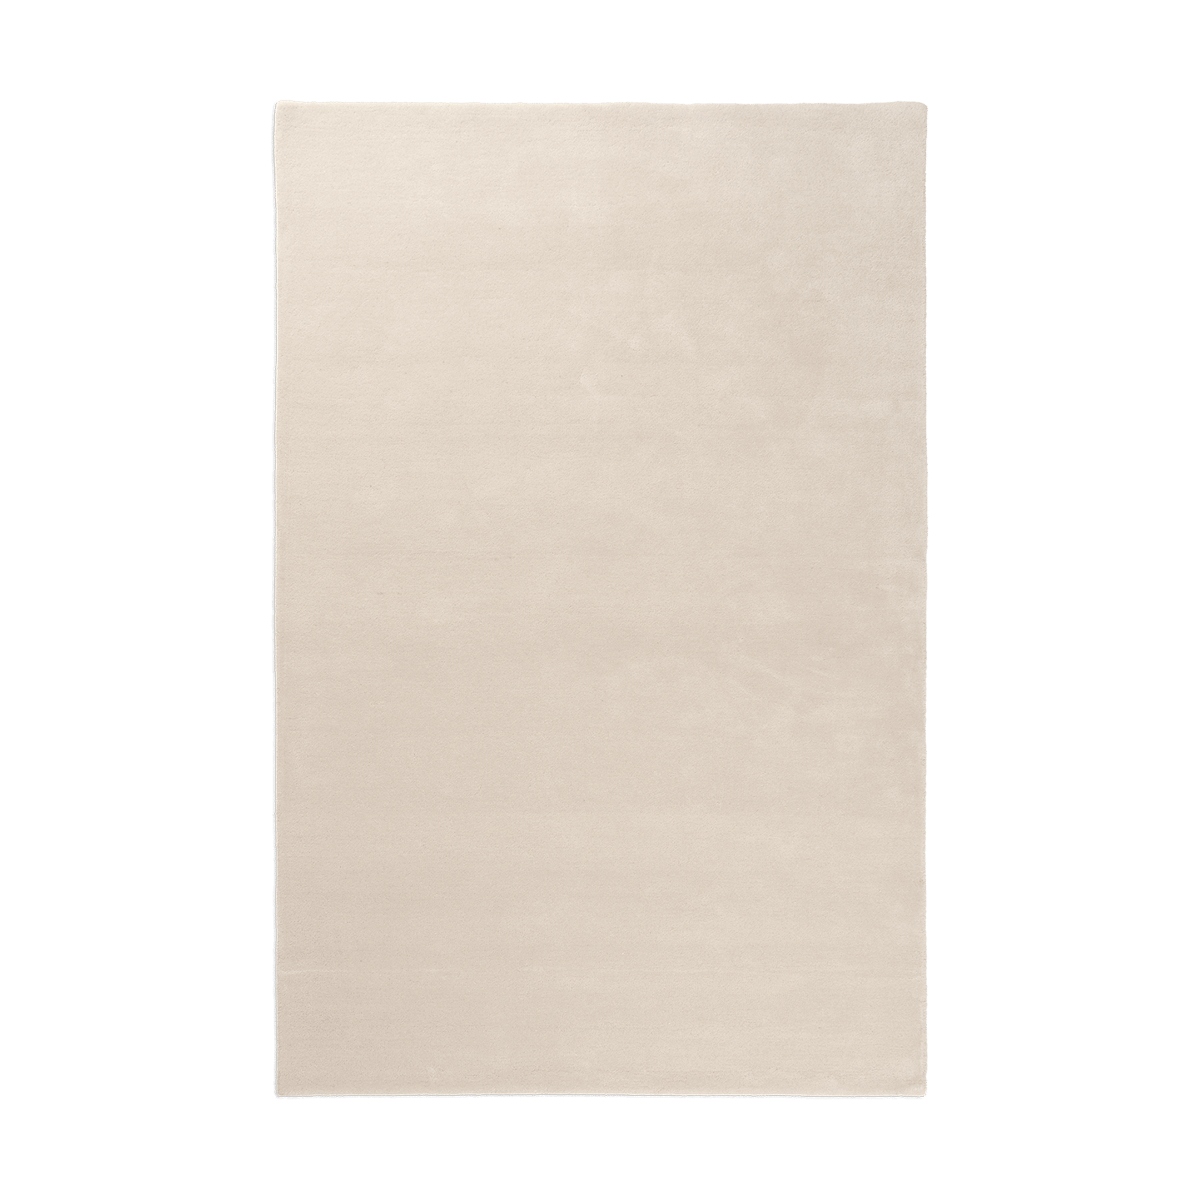 ferm LIVING Stille getuft vloerkleed Off-white, 160x250 cm